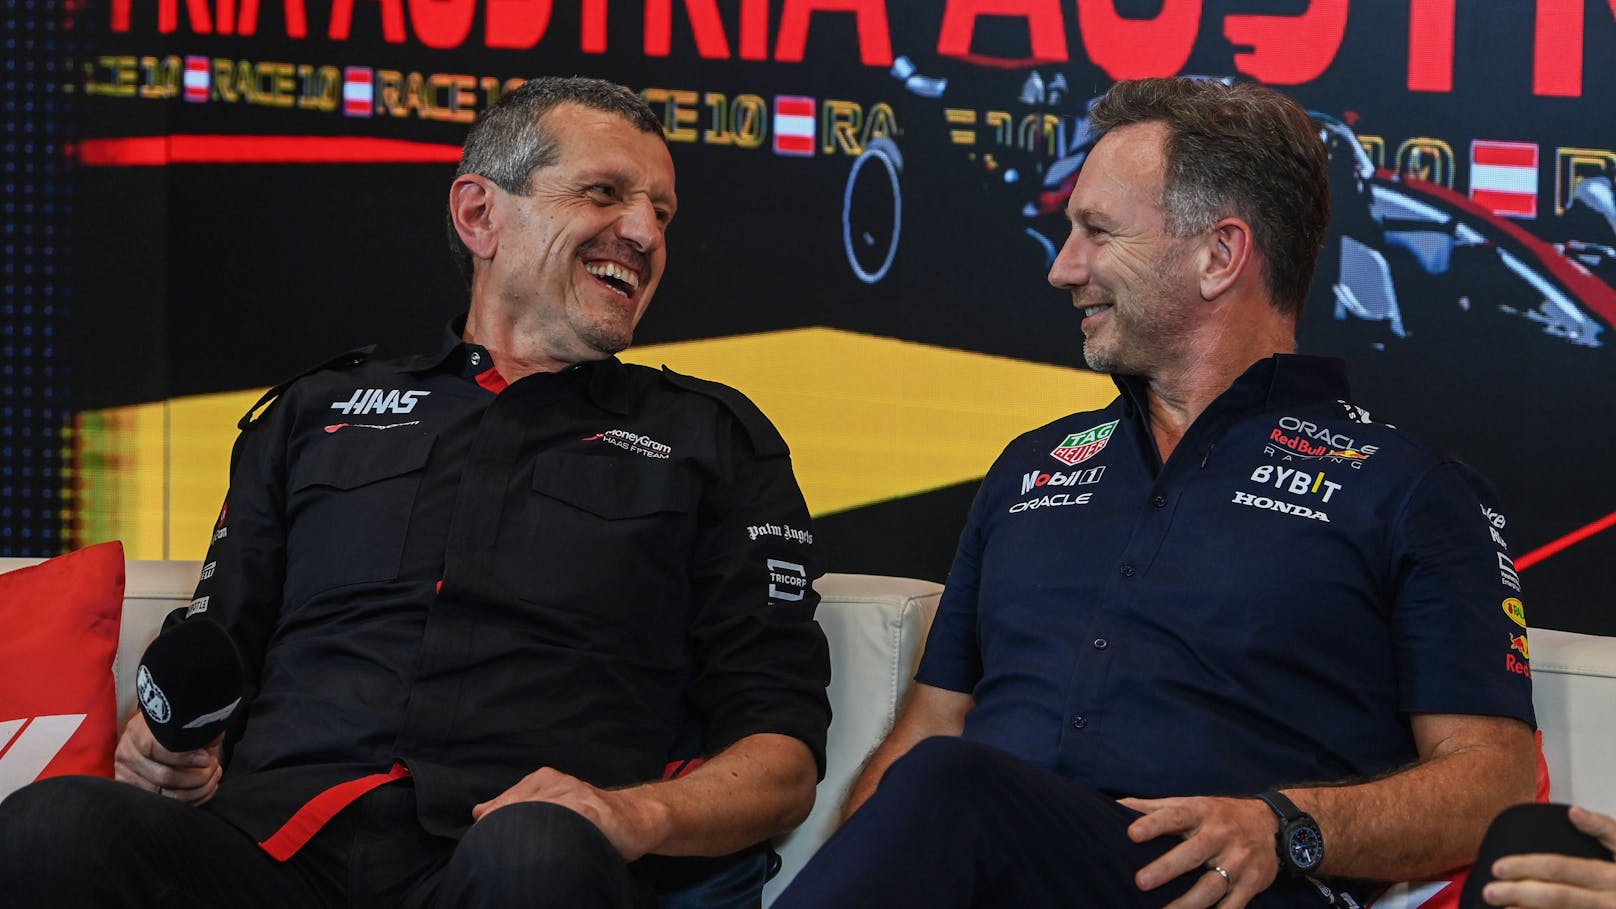 Kult-Teamchef will Red-Bull-Team übernehmen